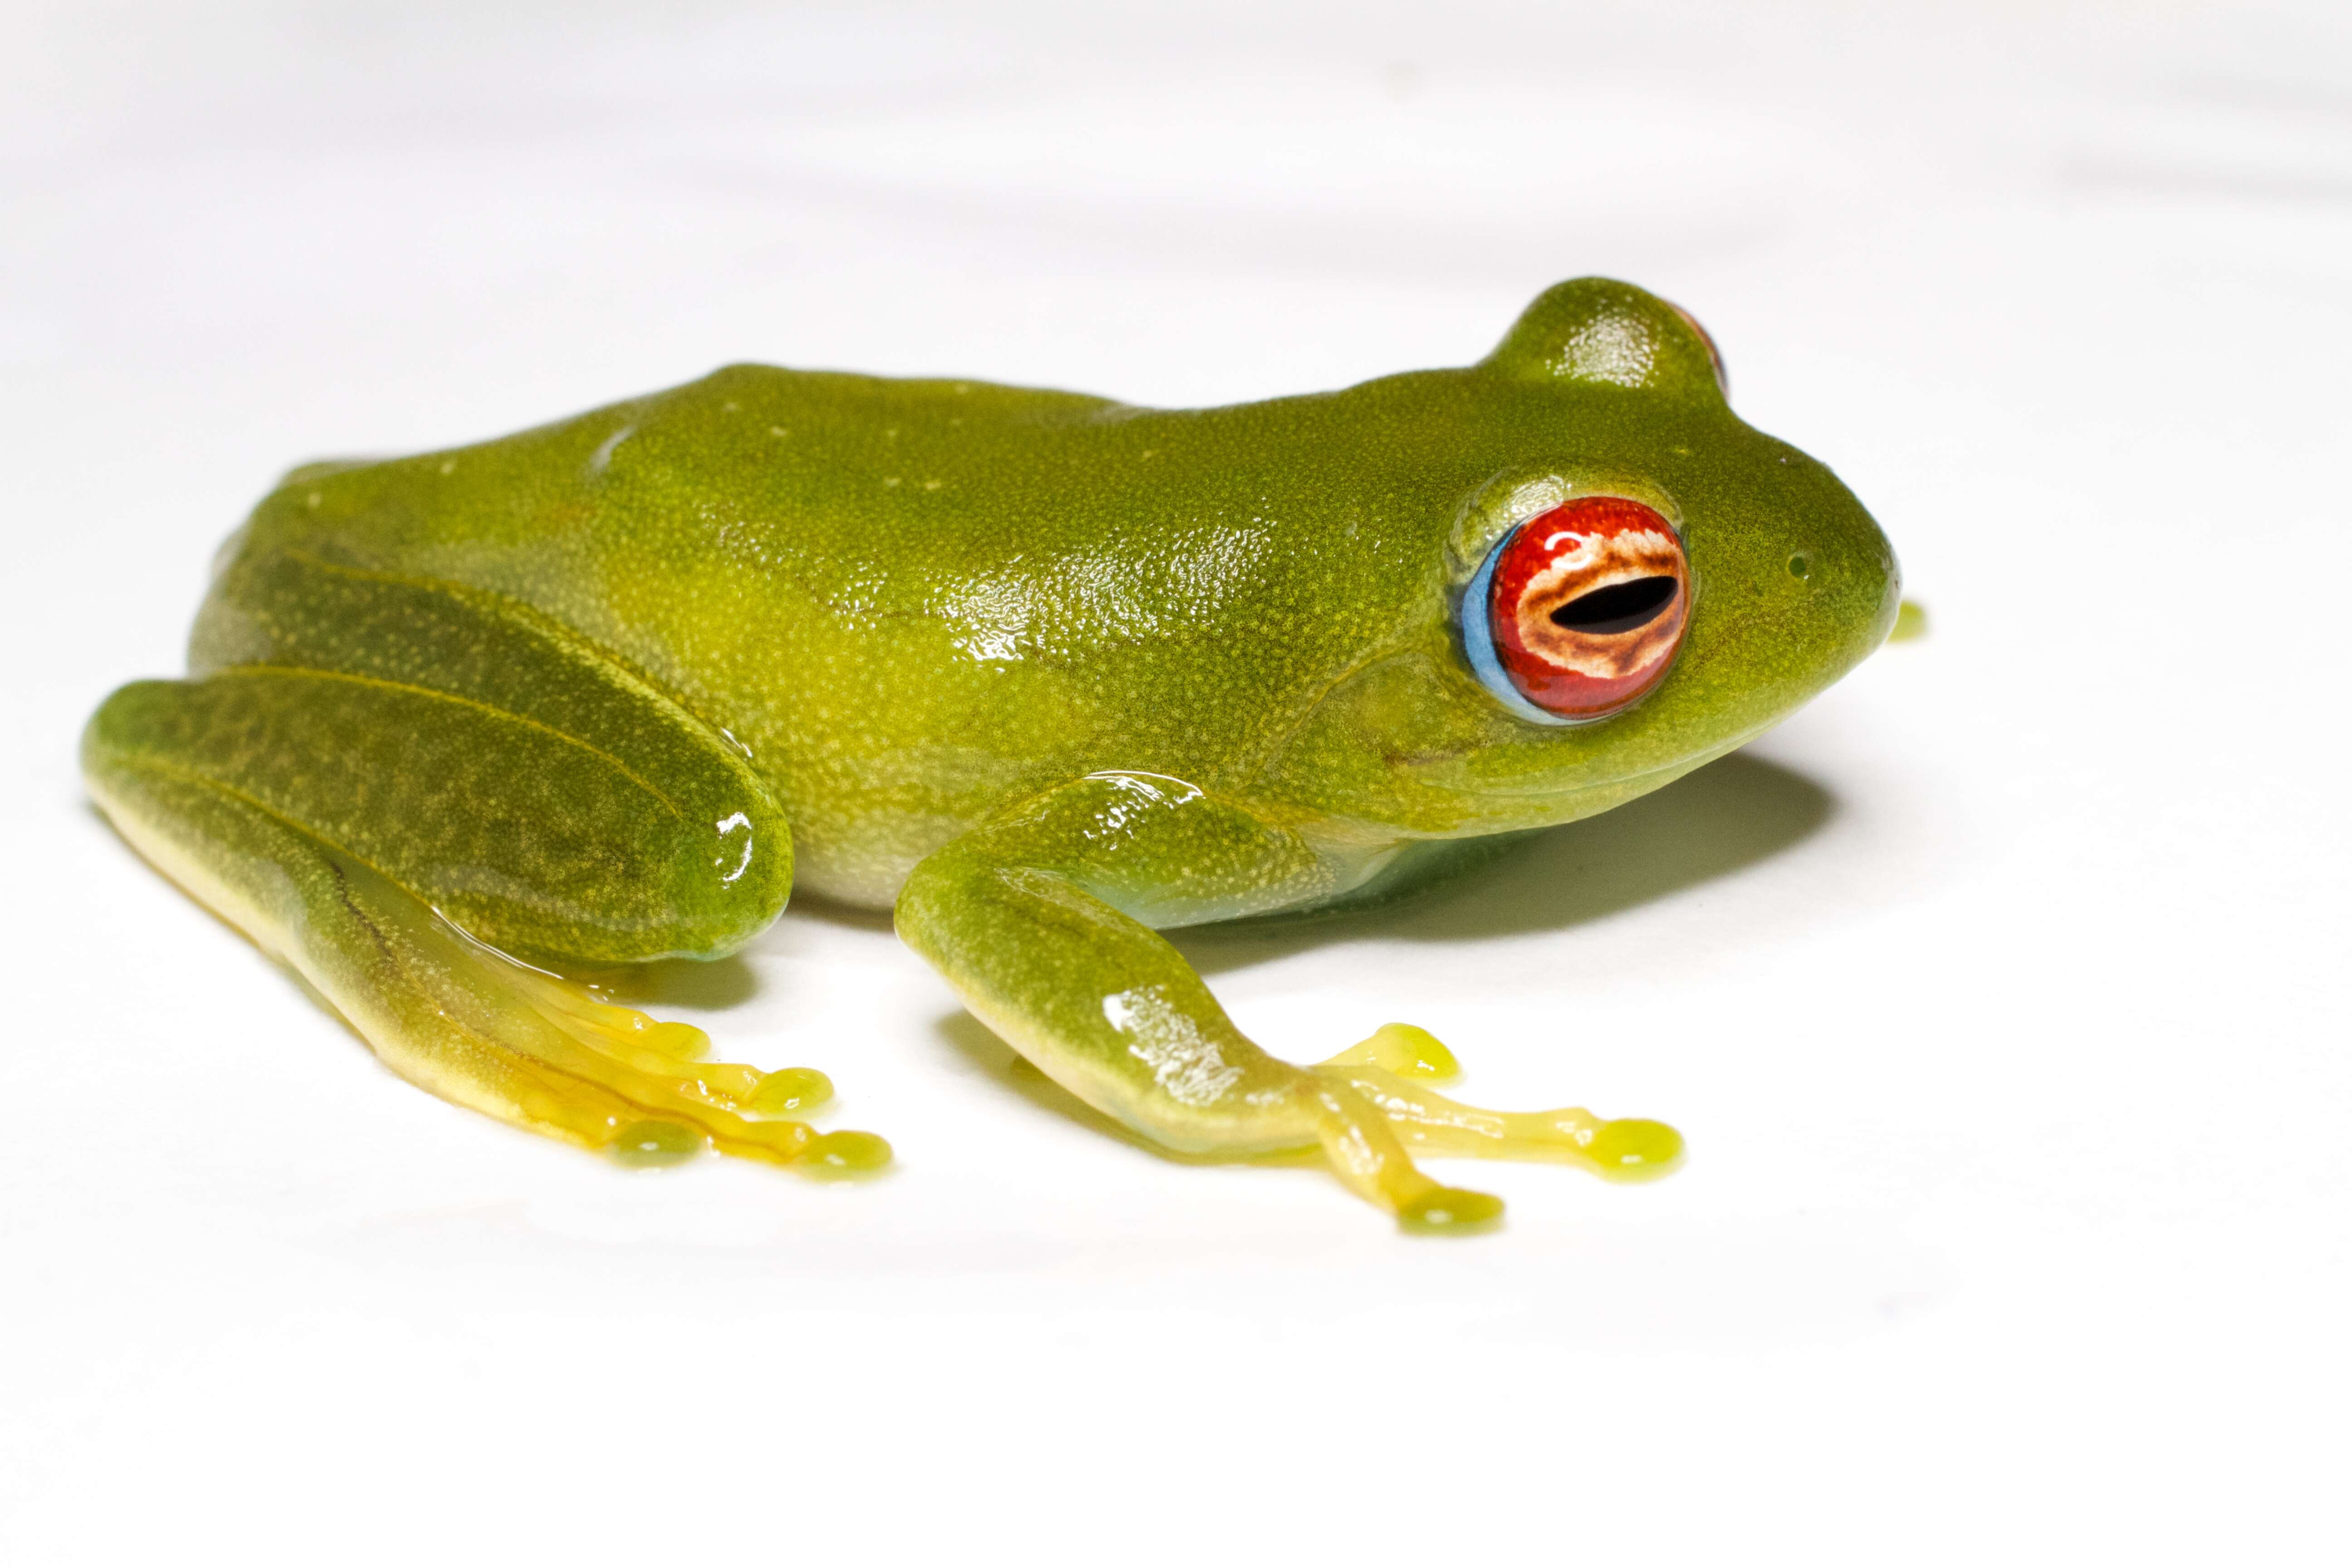 Image of Ankafana Bright-eyed Frog